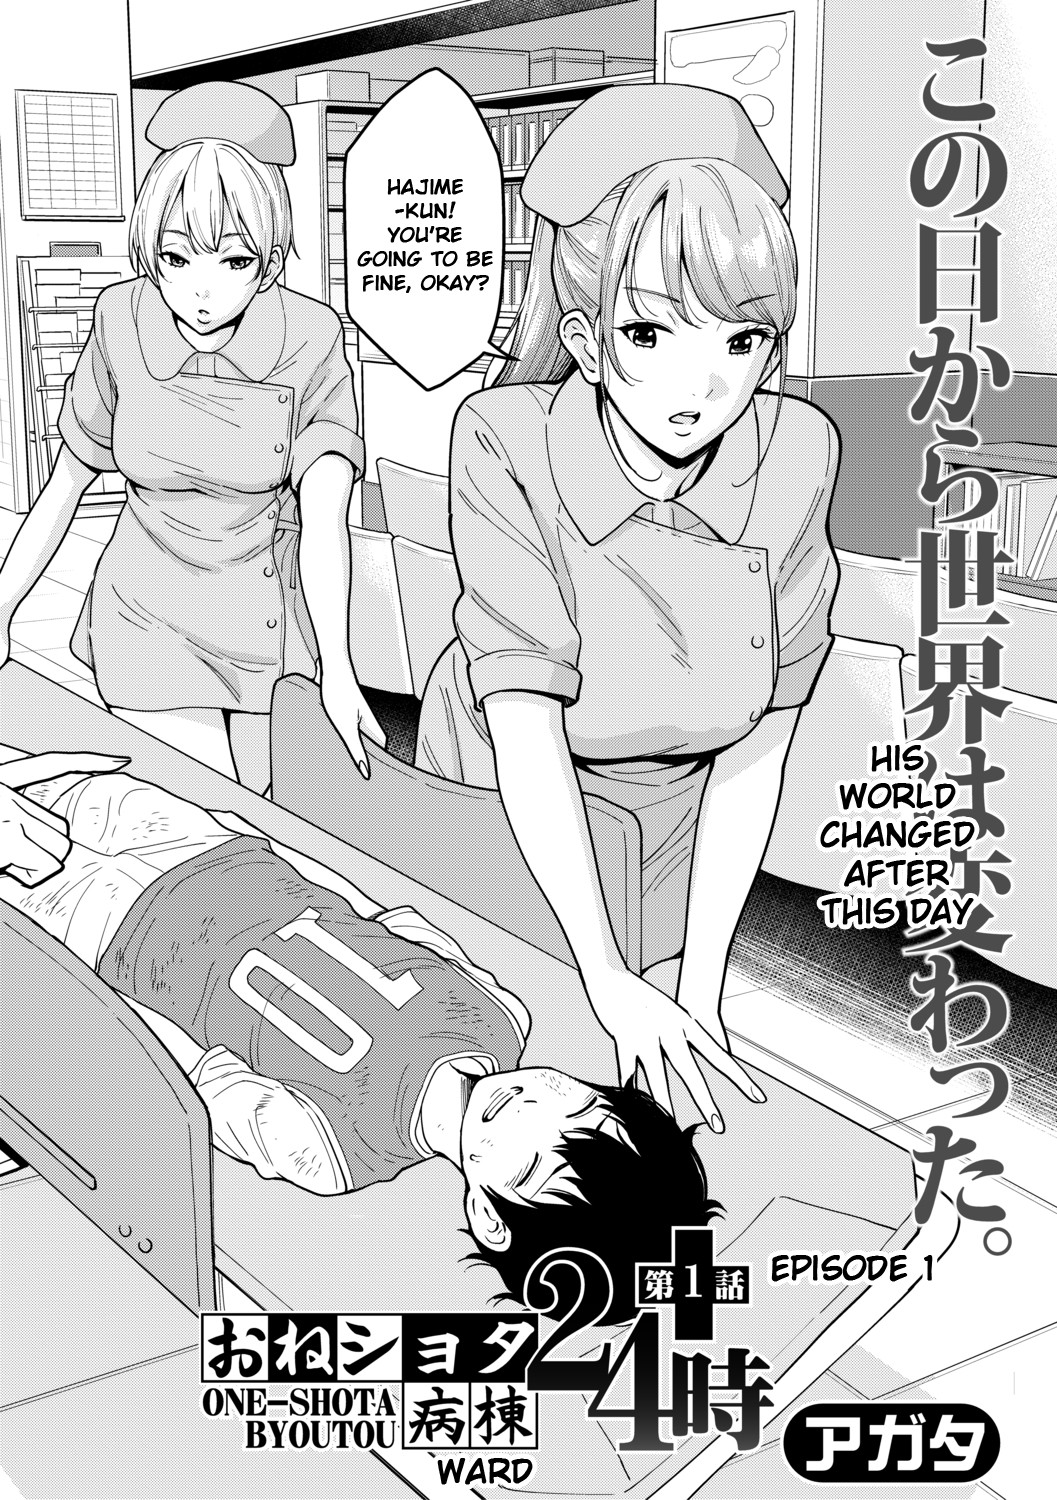 Hentai Manga Comic-Oneeshota Ward 24 Hour Care-Chapter 1-5-4